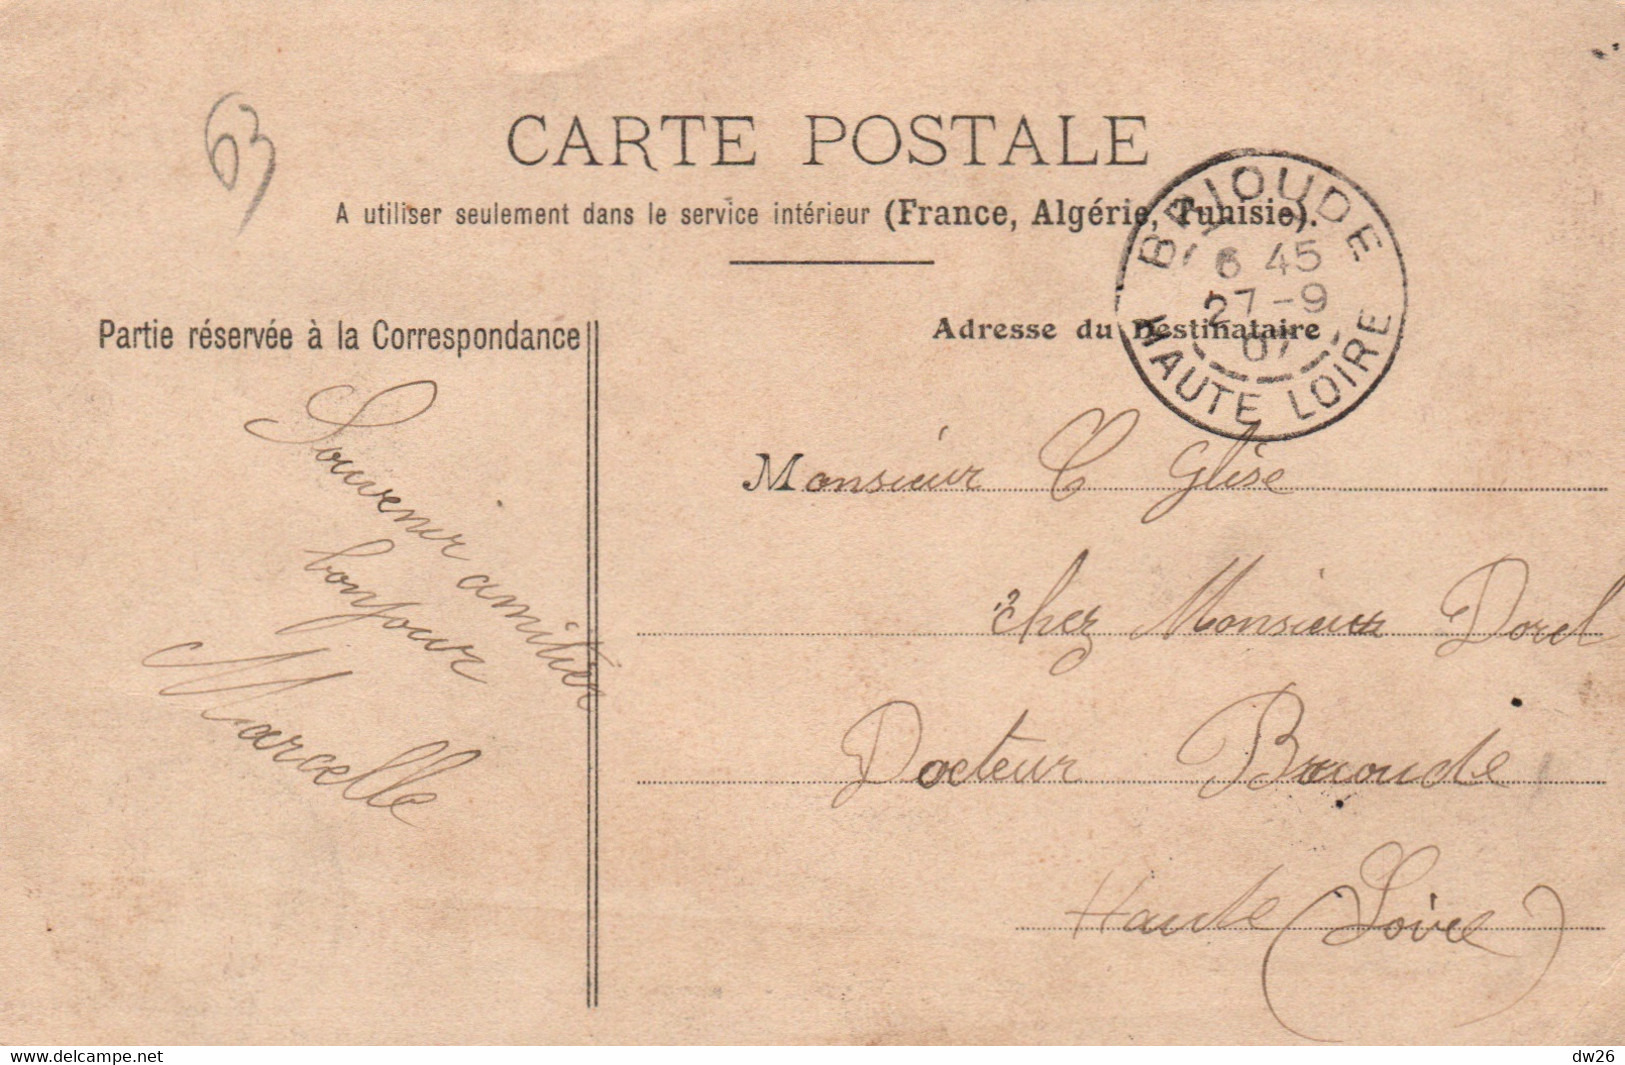 Casernes: Clermont-Ferrand - Caserne D'Estaing - Edition P.H. & Cie Nancy - Carte N° 53 De 1907 - Barracks